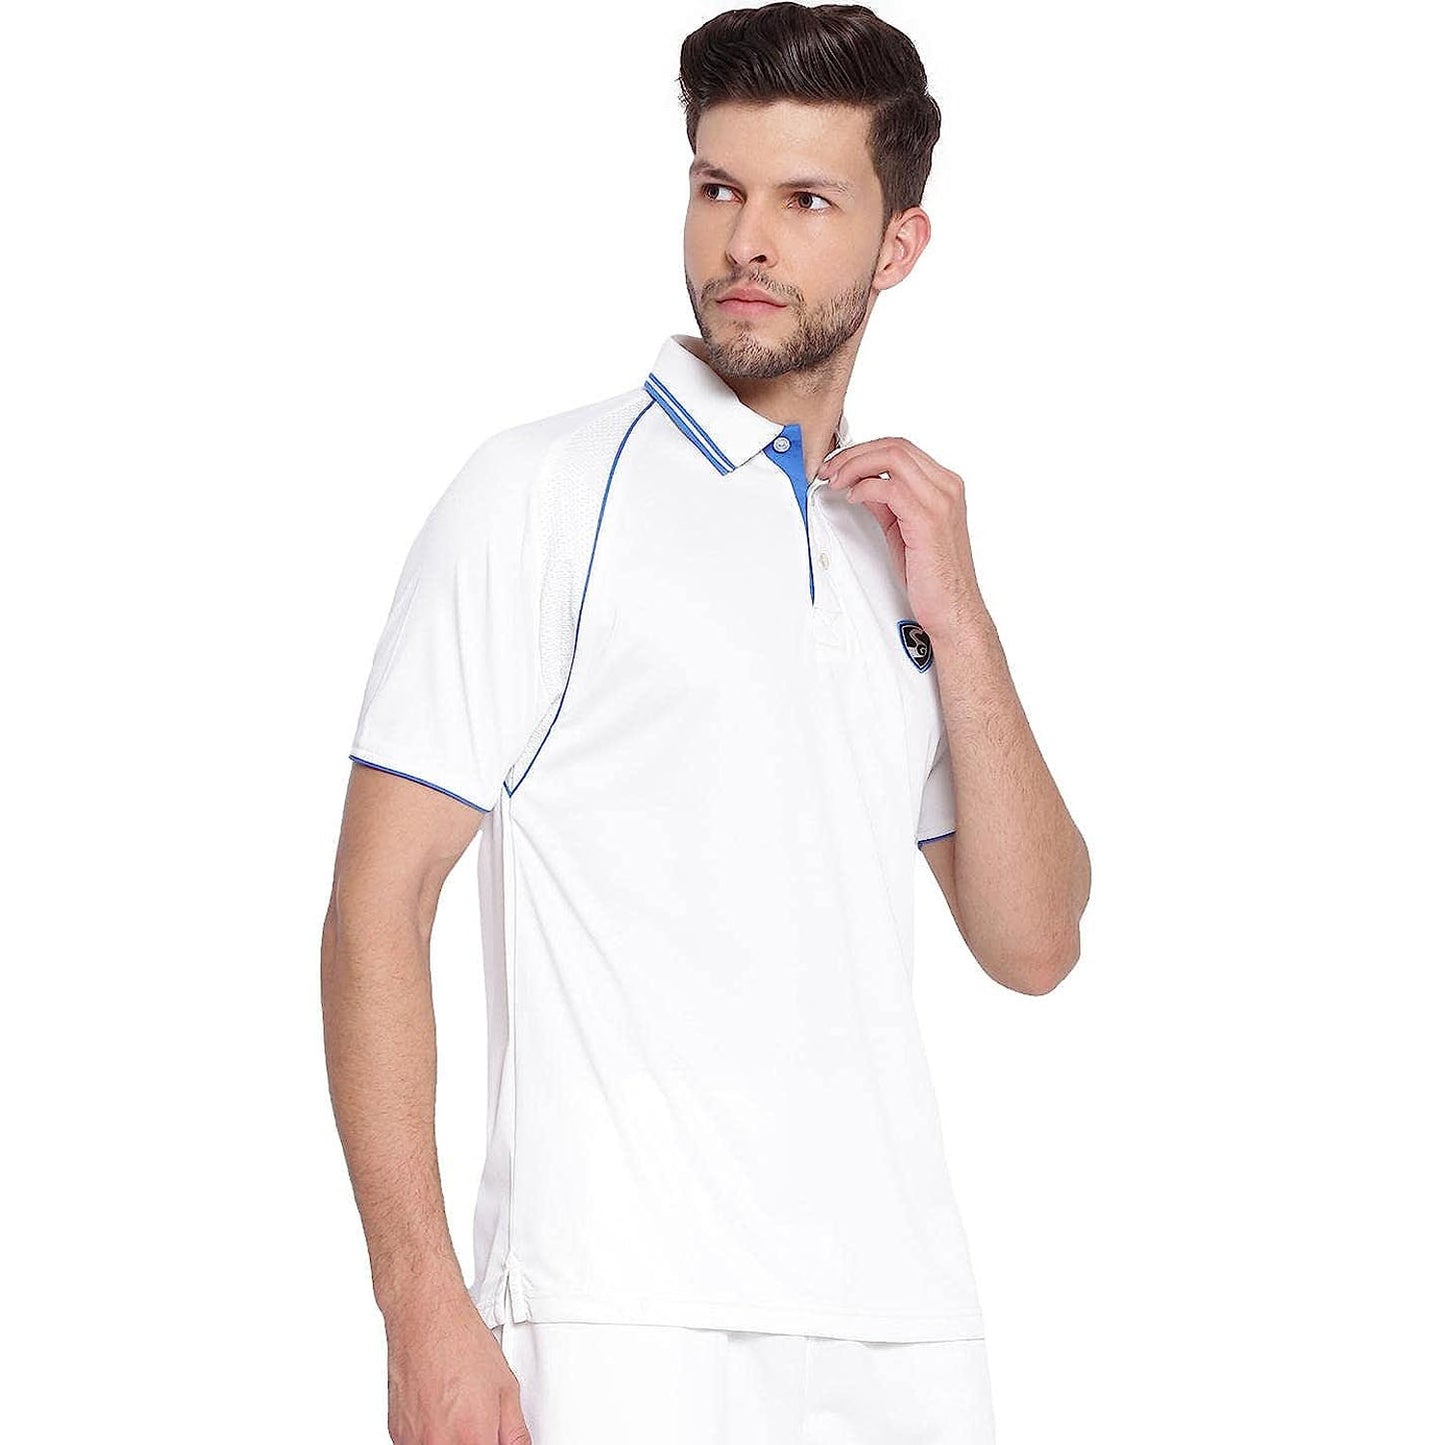 SG Premium 2.0 Half Sleeves Cricket Shirt, White - Best Price online Prokicksports.com